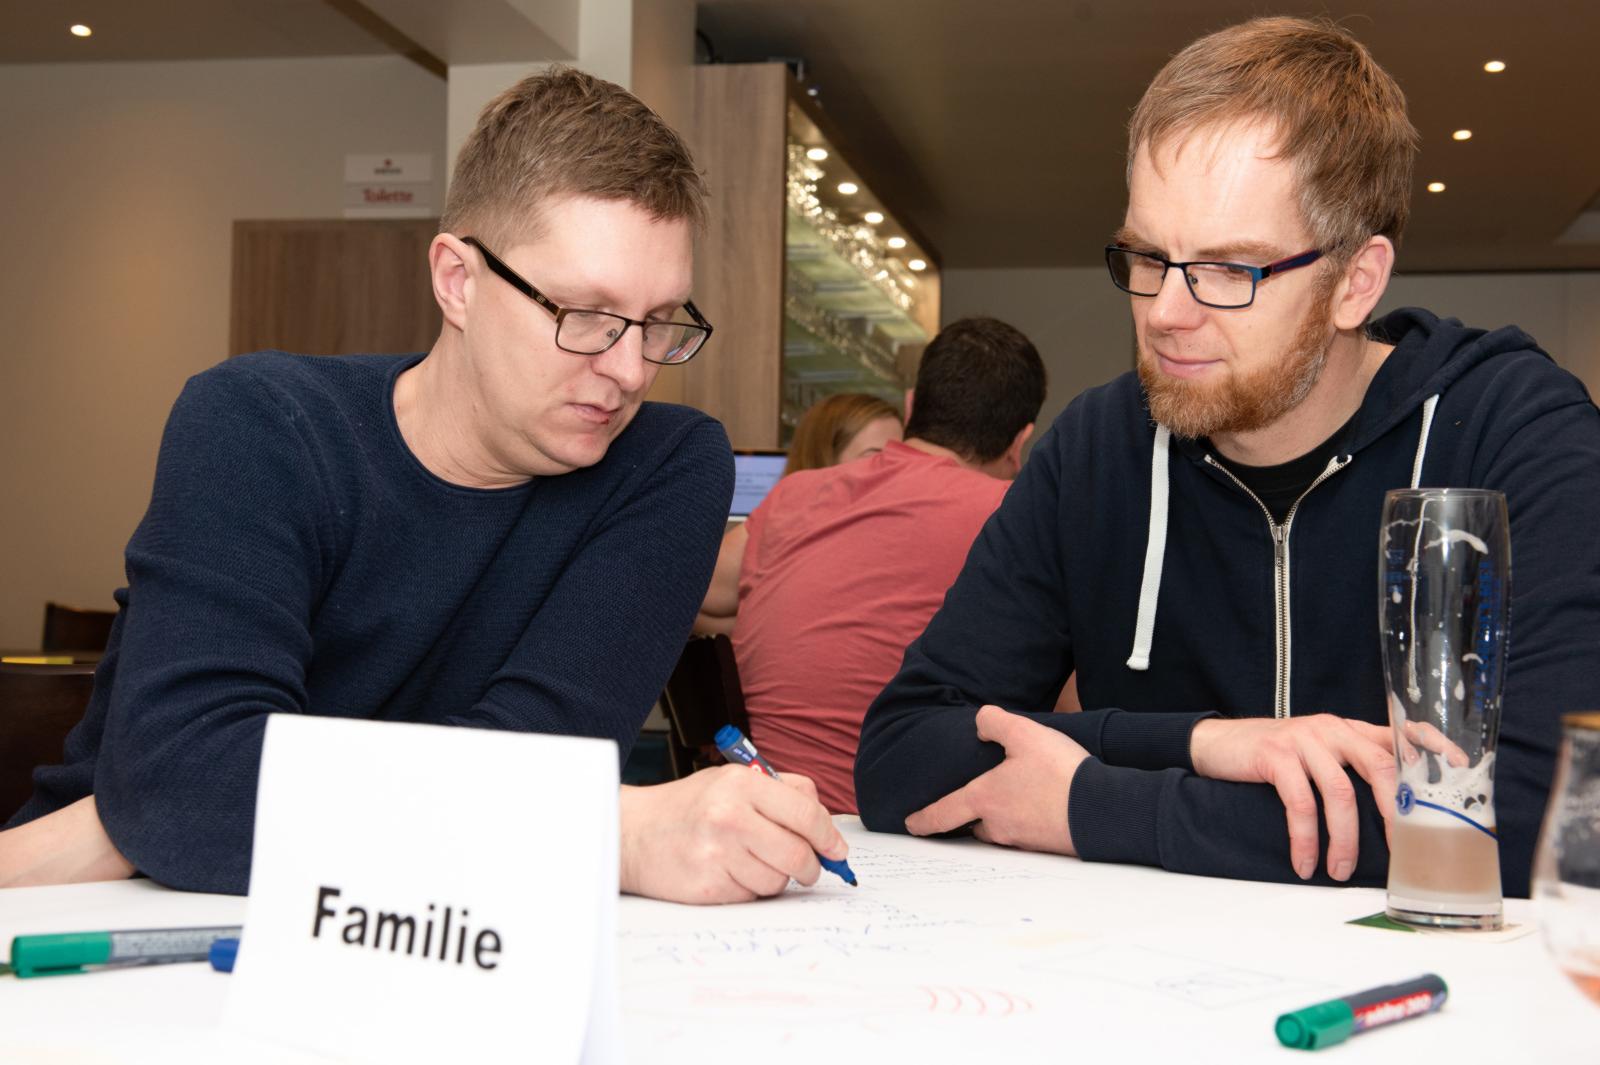 Ihre Ideen schrieben die Teilnehmer direkt auf die Tischdecke. (Foto: FH Münster/Katrin Uude)  